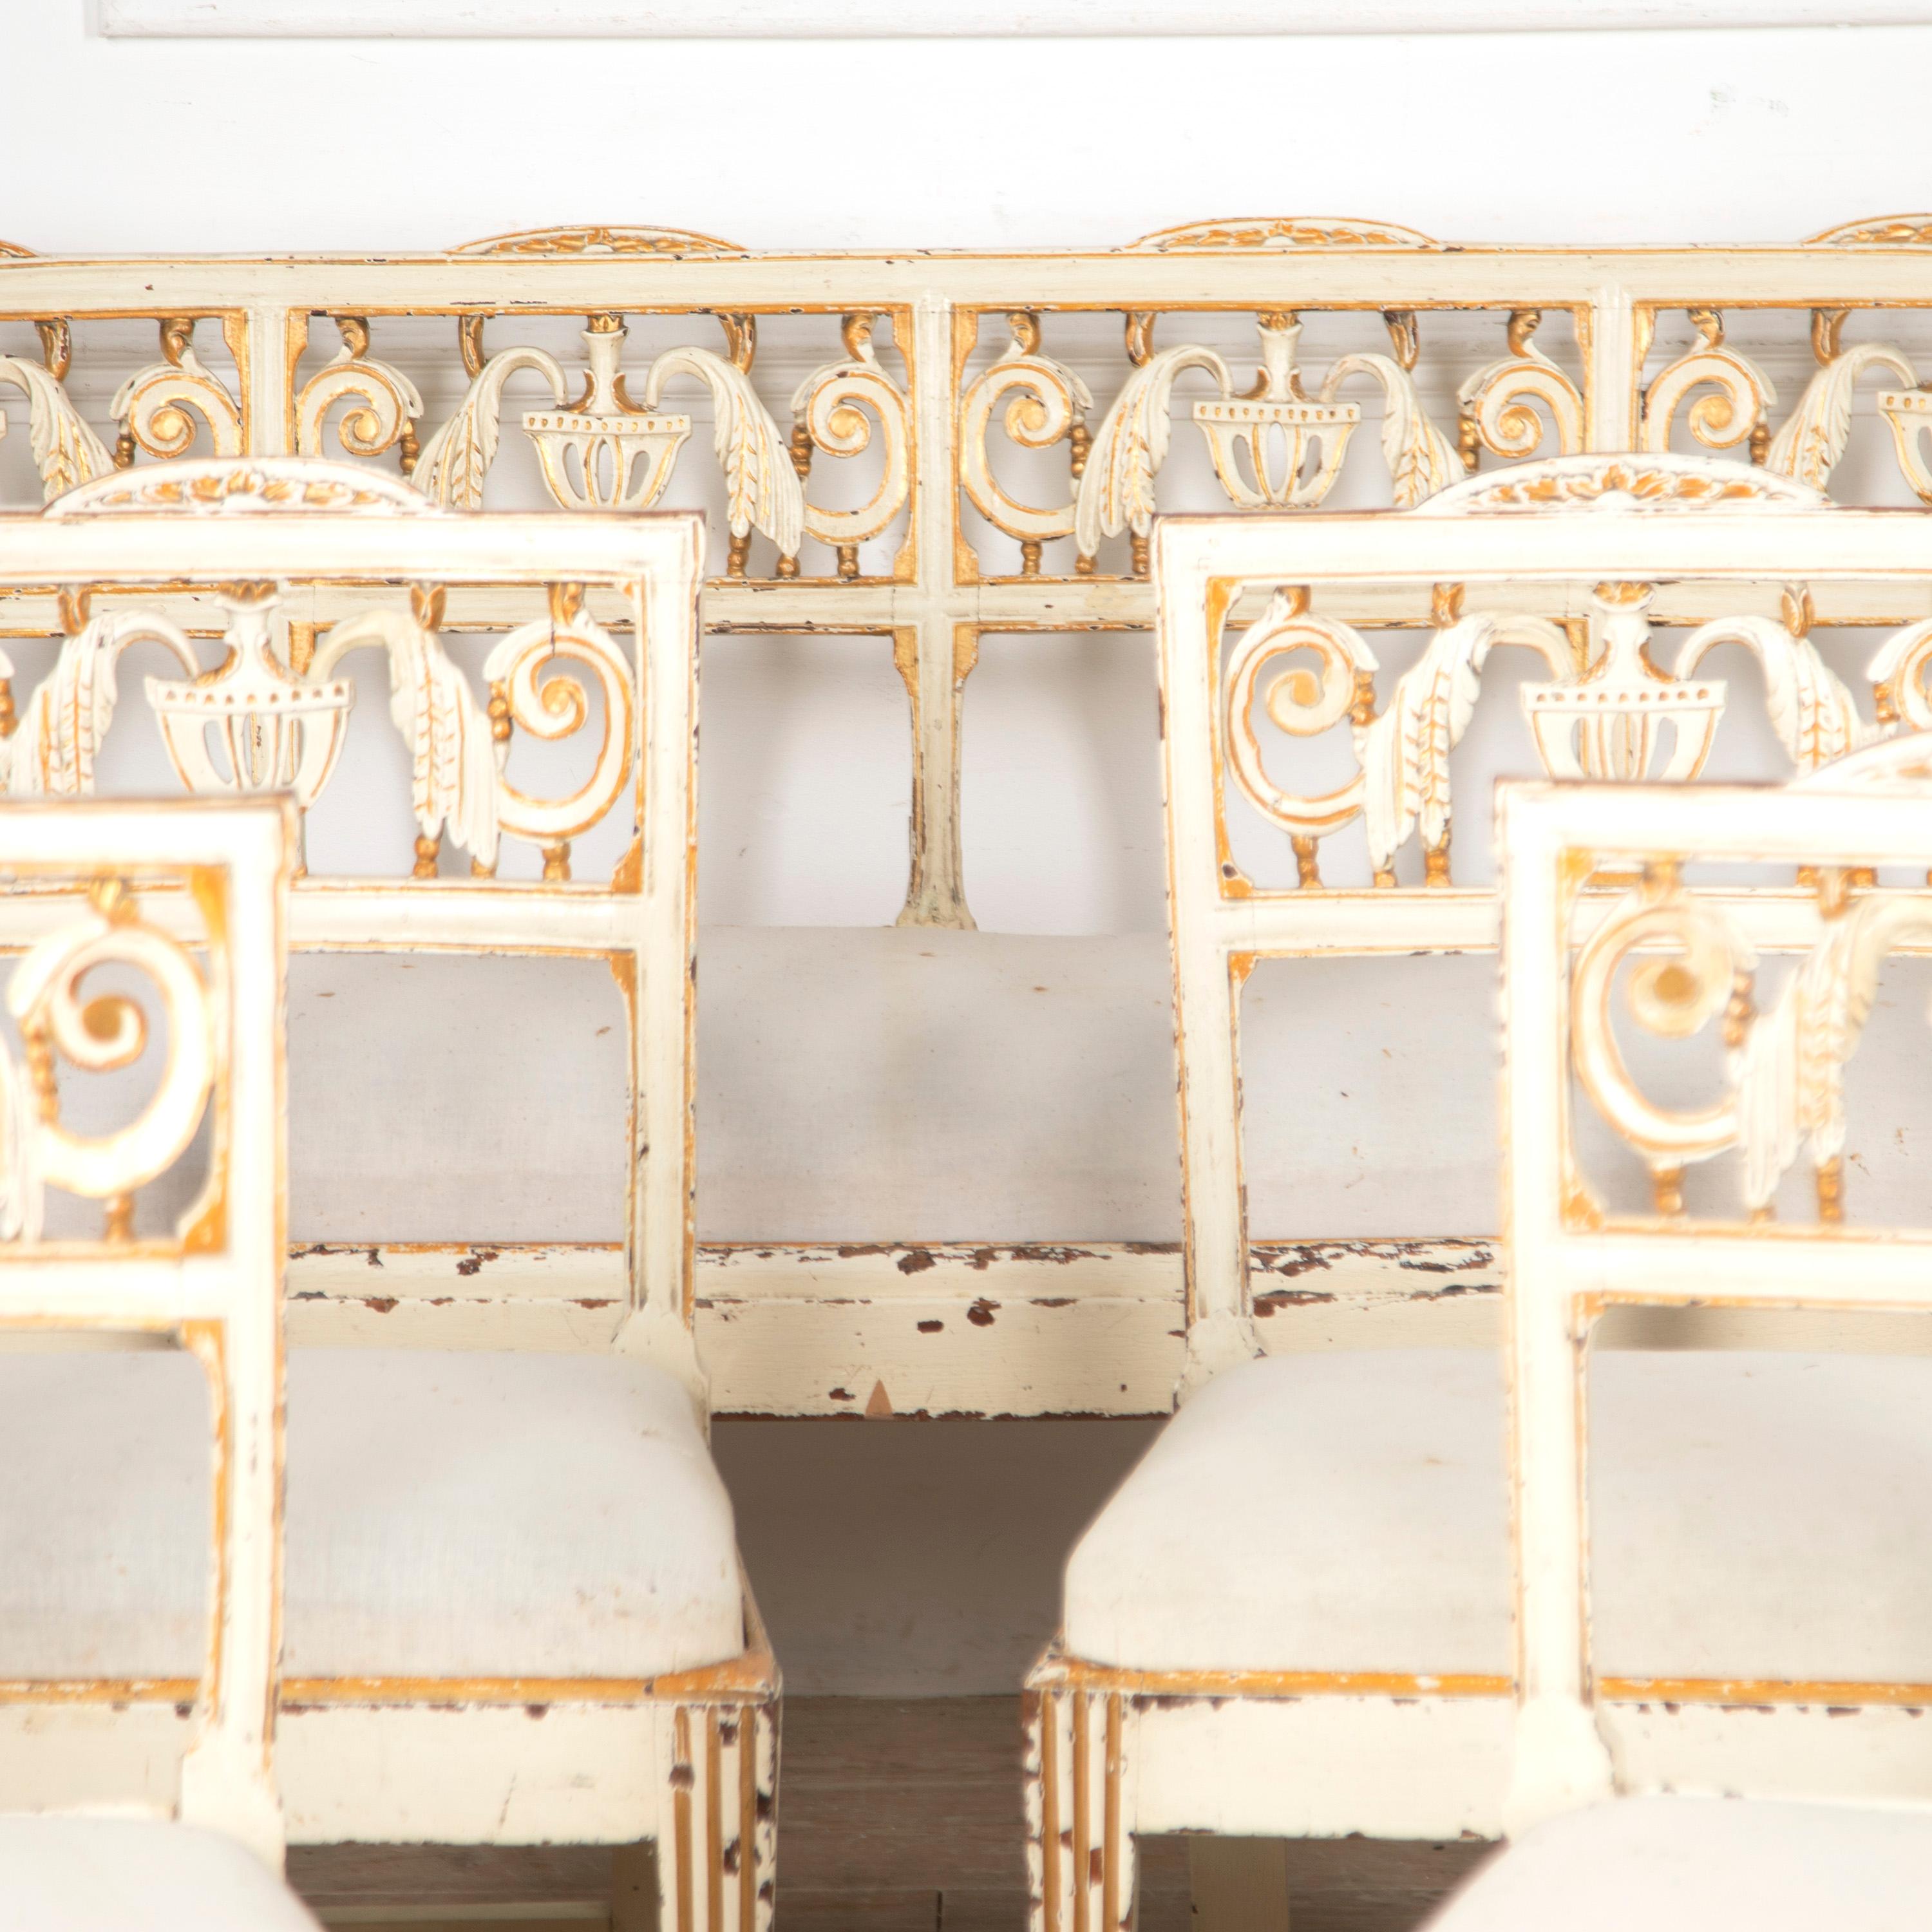 Ensemble décoratif de huit chaises de salle à manger vénitiennes peintes et d'un banc du XVIIIe siècle. 

Ce merveilleux ensemble possède beaucoup de charme et d'histoire. Les chaises et le banc ont été apportés à l'origine d'un palais de Venise